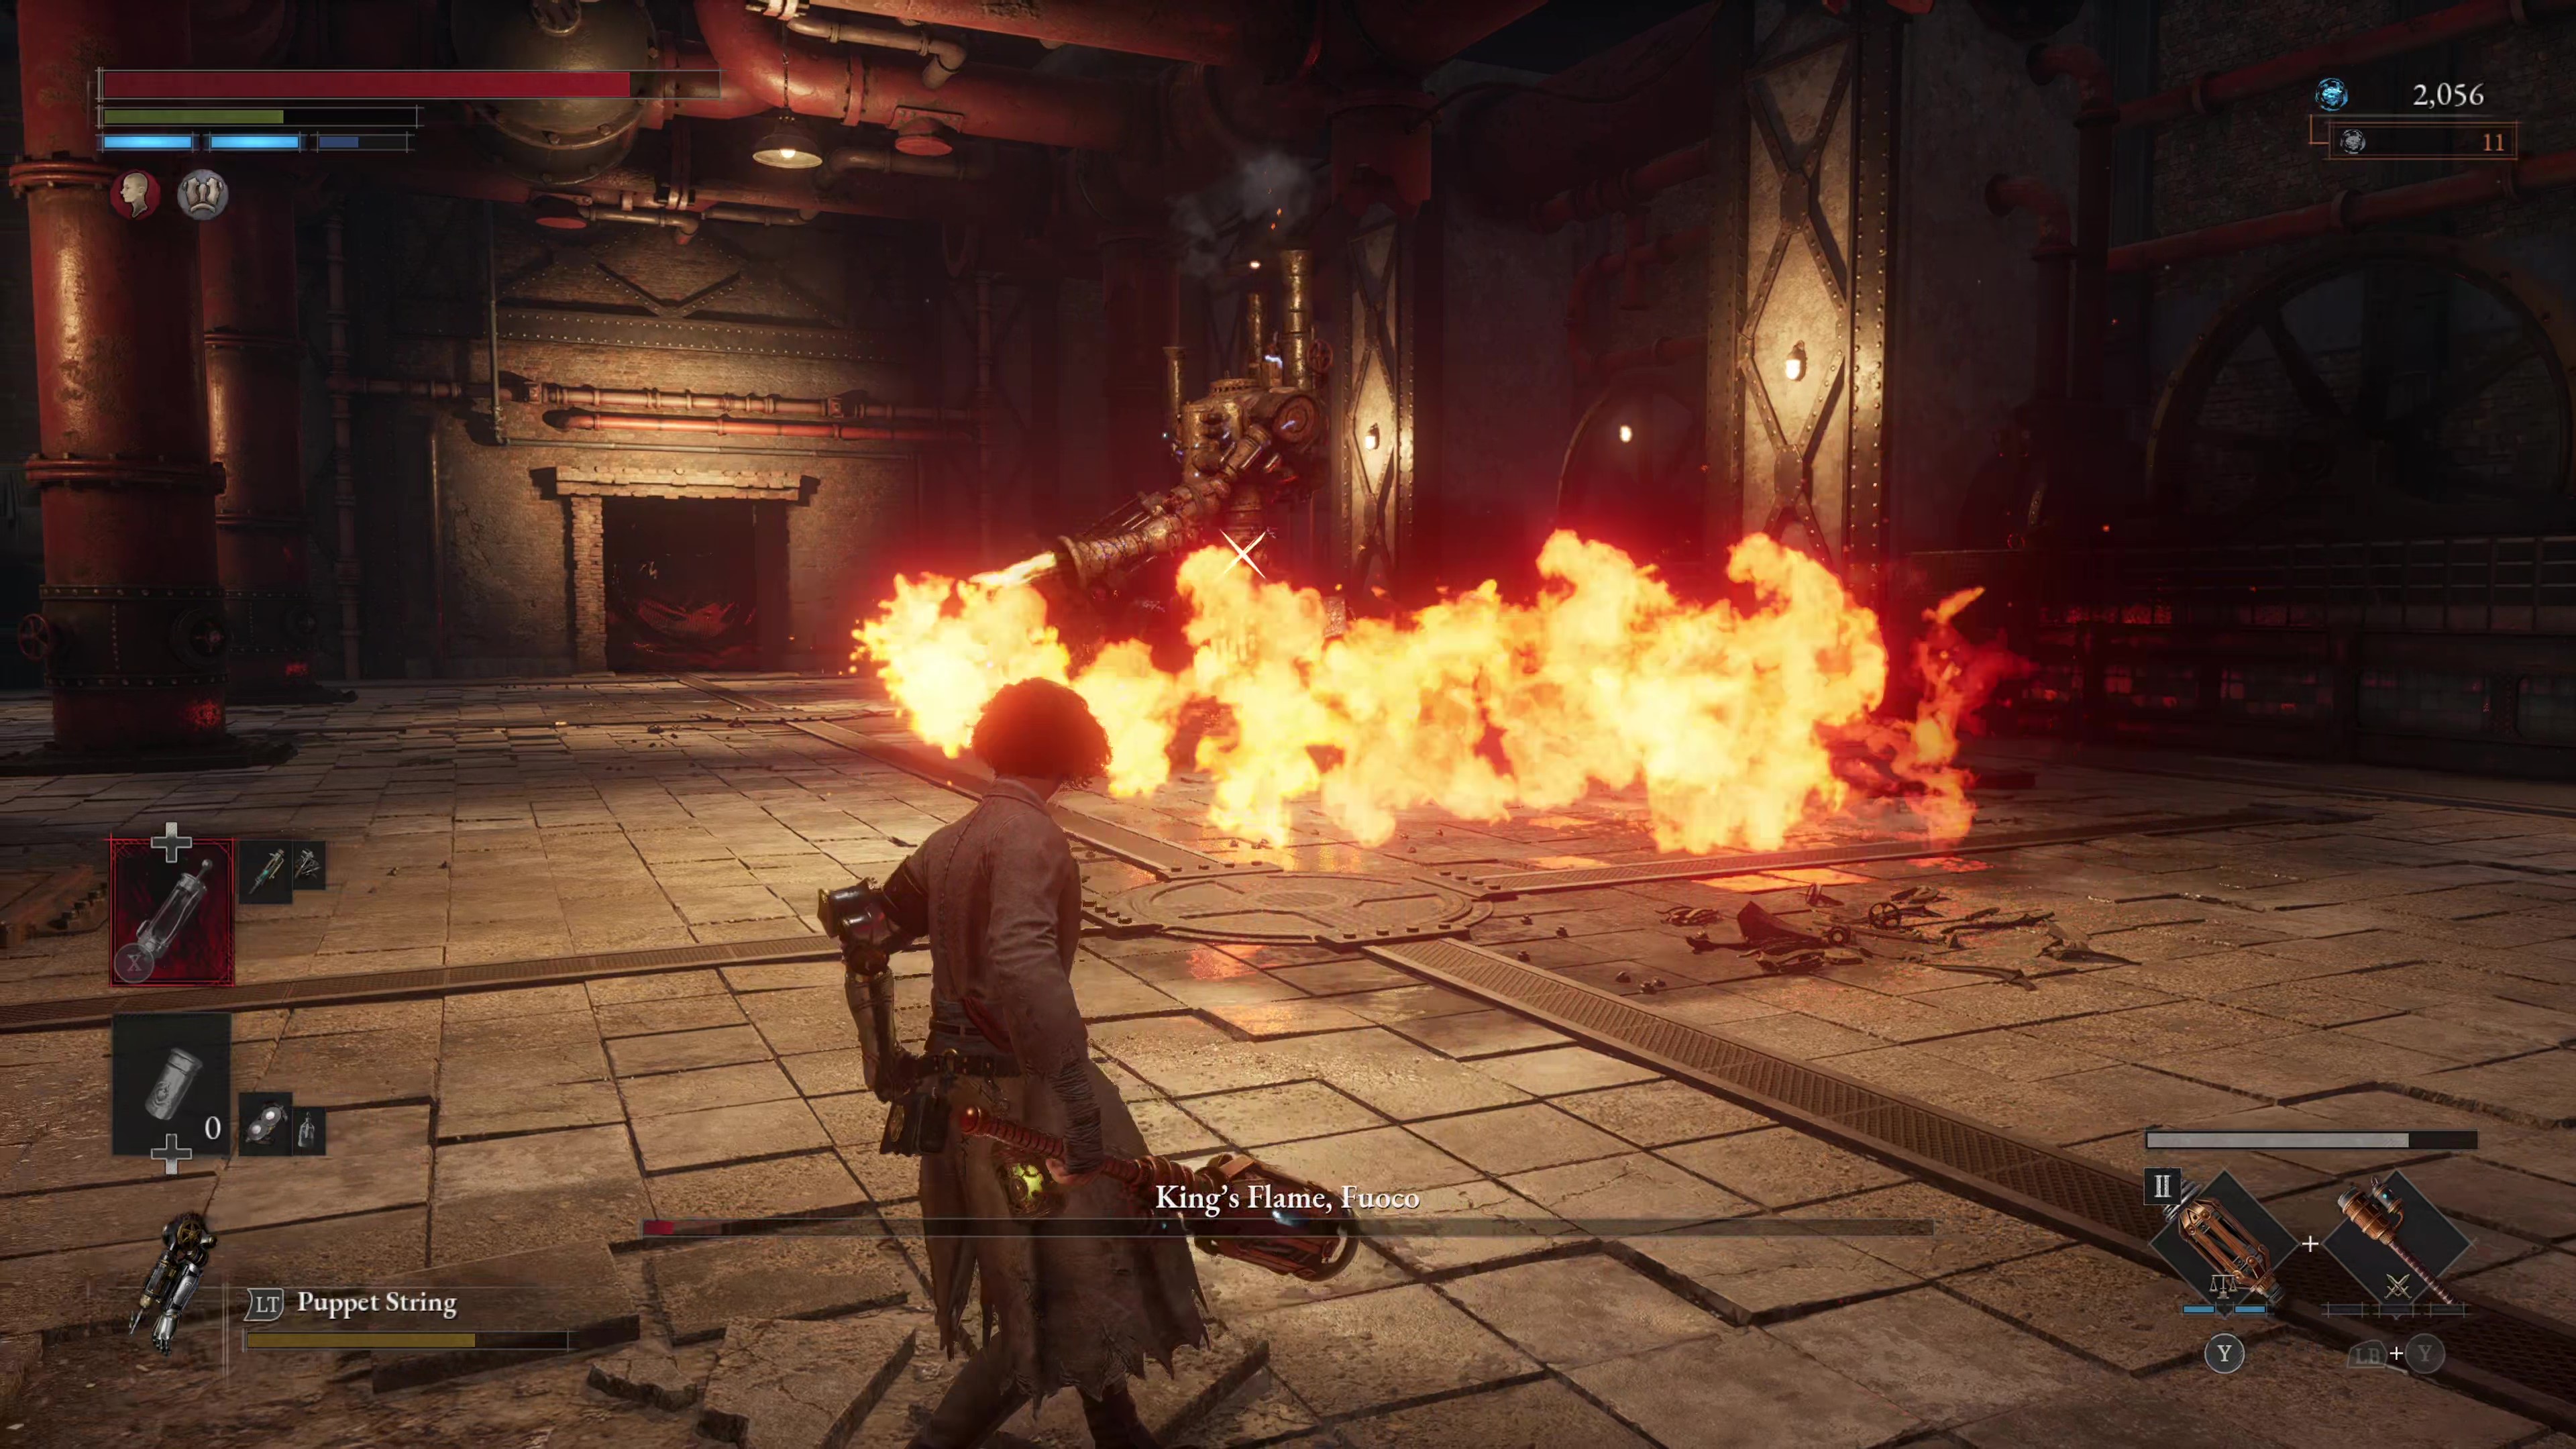 Schermata di gioco di Lies of P di King's Flame, combattimento contro il boss Fuoco